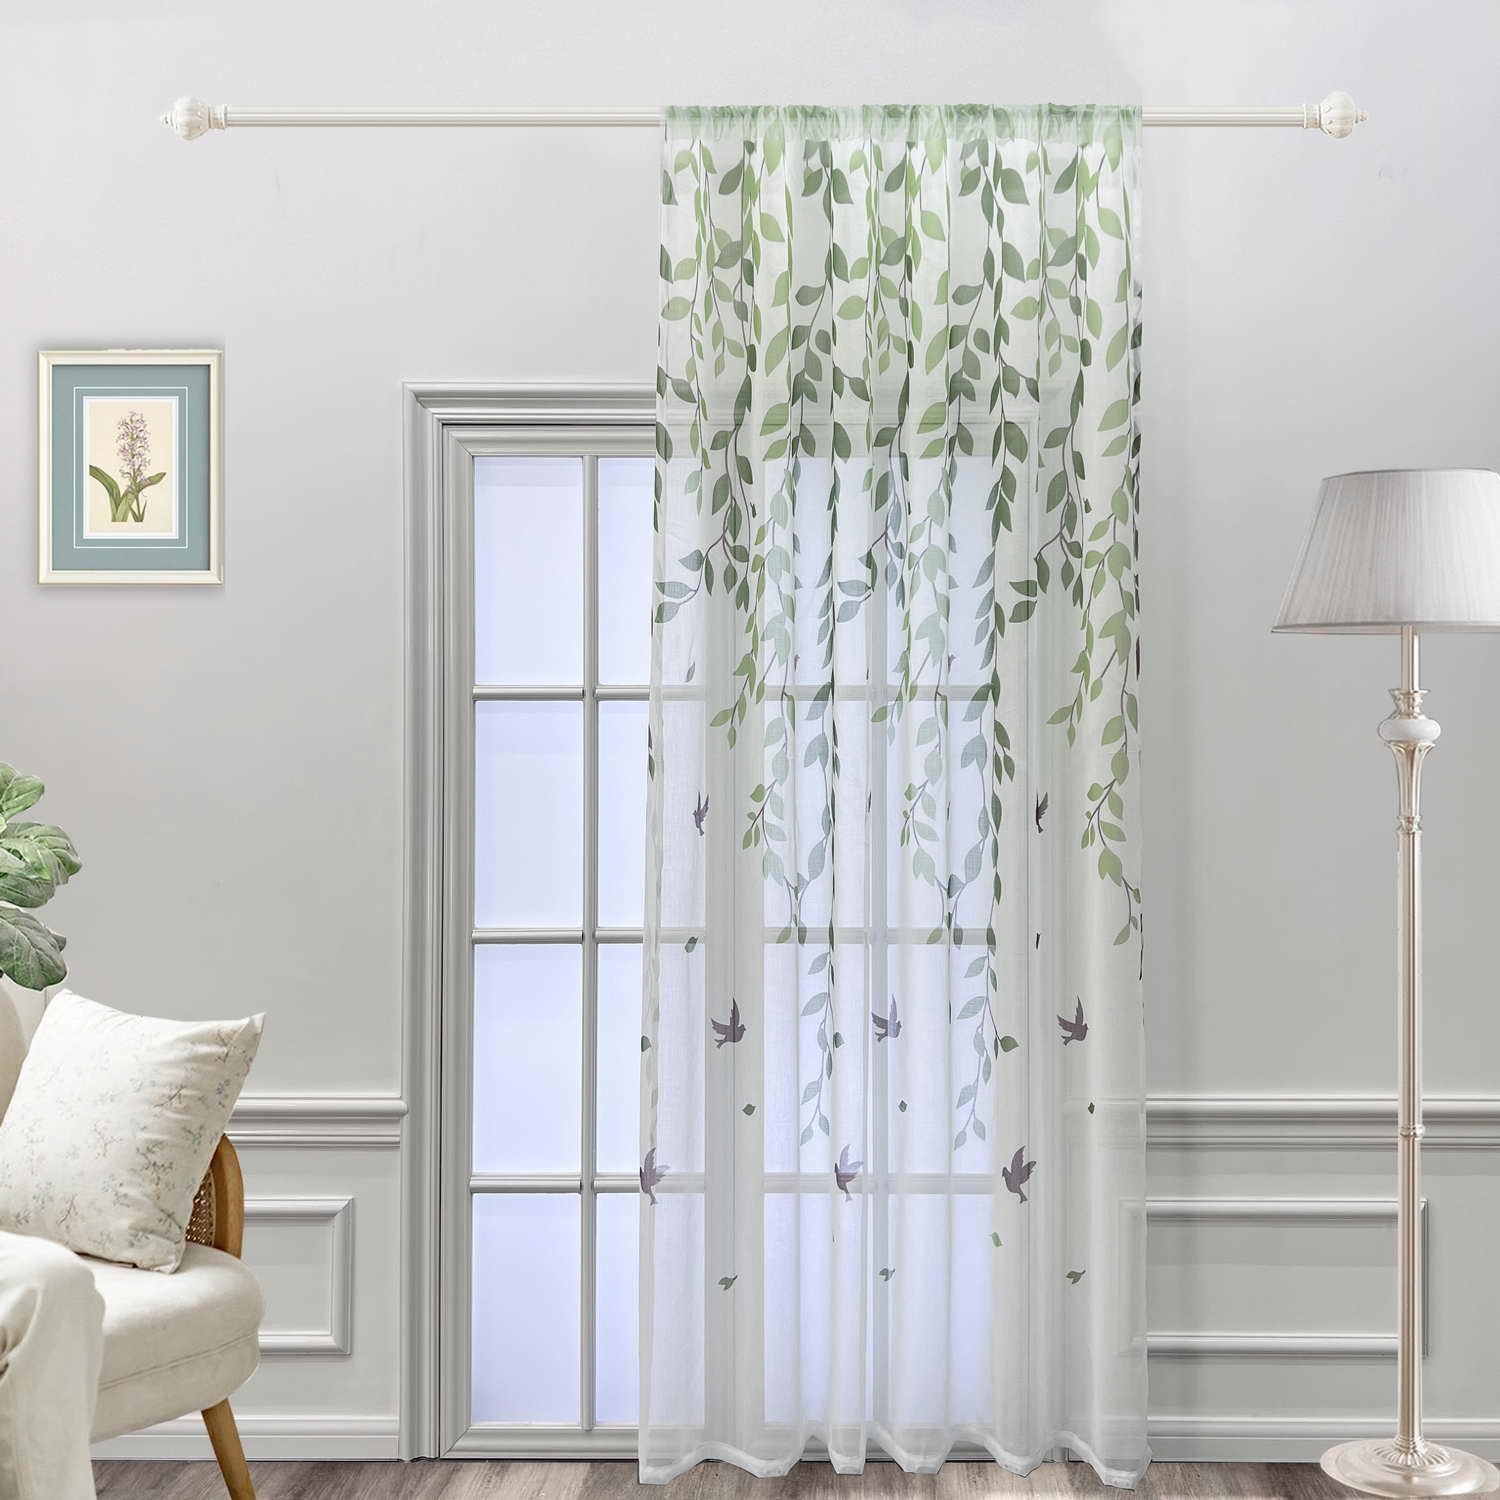 FRAMICS Cortinas de hojas verdes para sala de estar, cortinas de hojas de  84 pulgadas de largo, 2 paneles de cortinas verdes para dormitorio